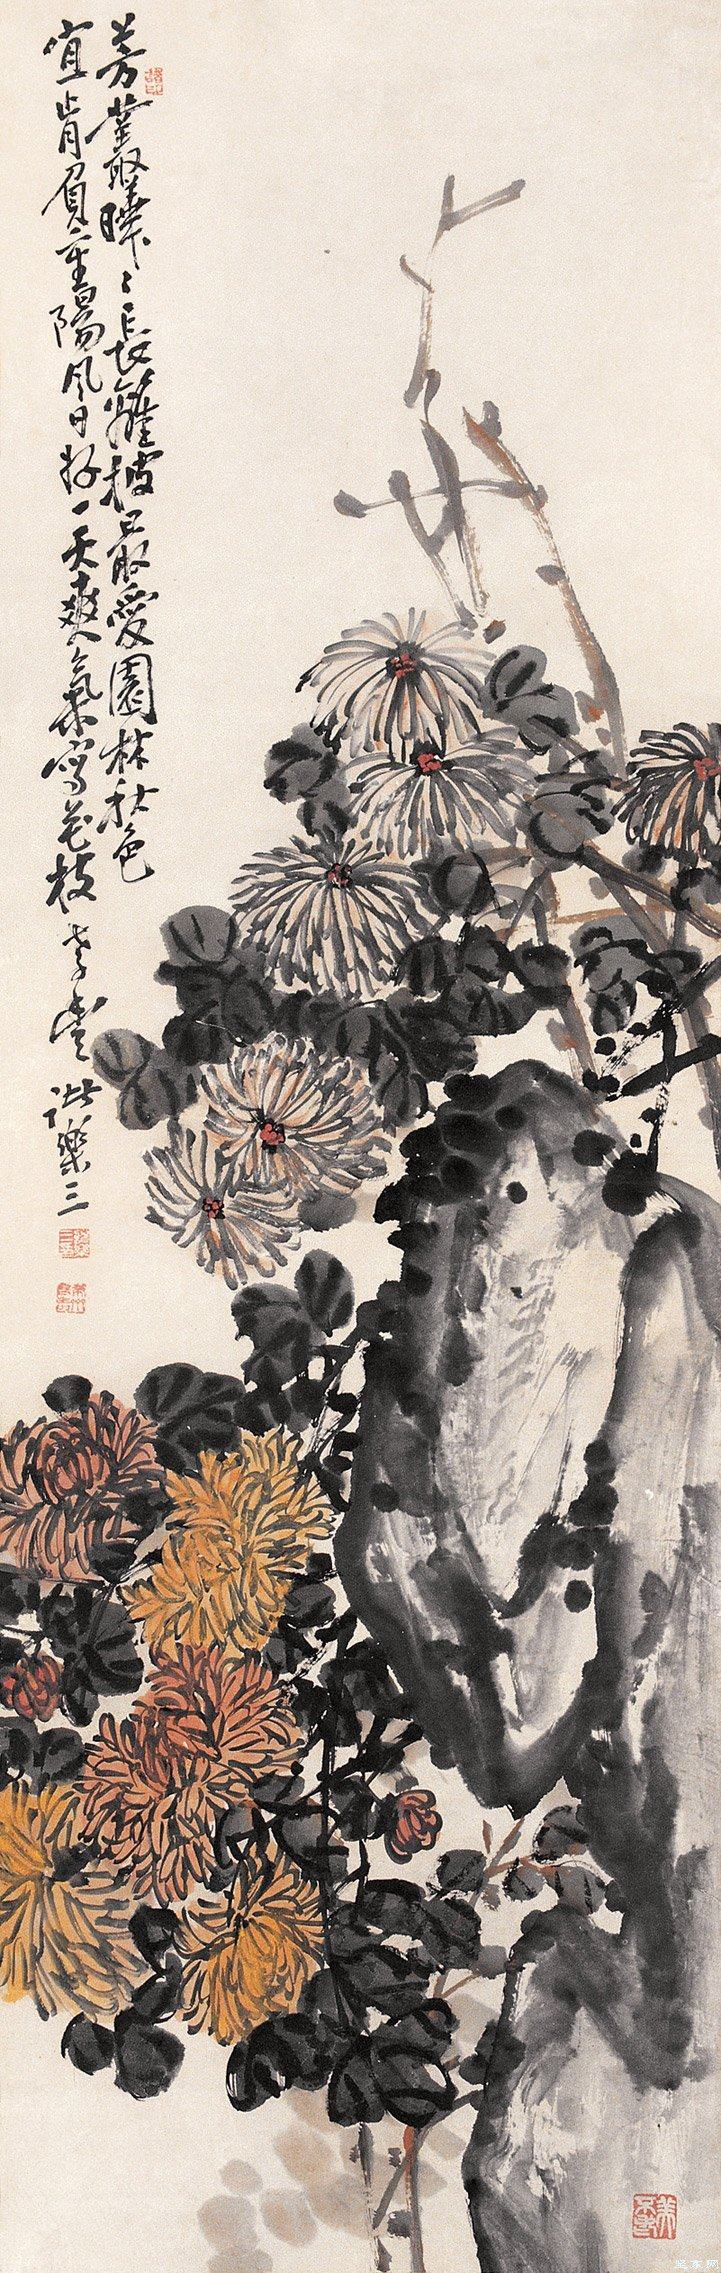 论诸乐三先生诗及其在中国文人画史上地位(图10)